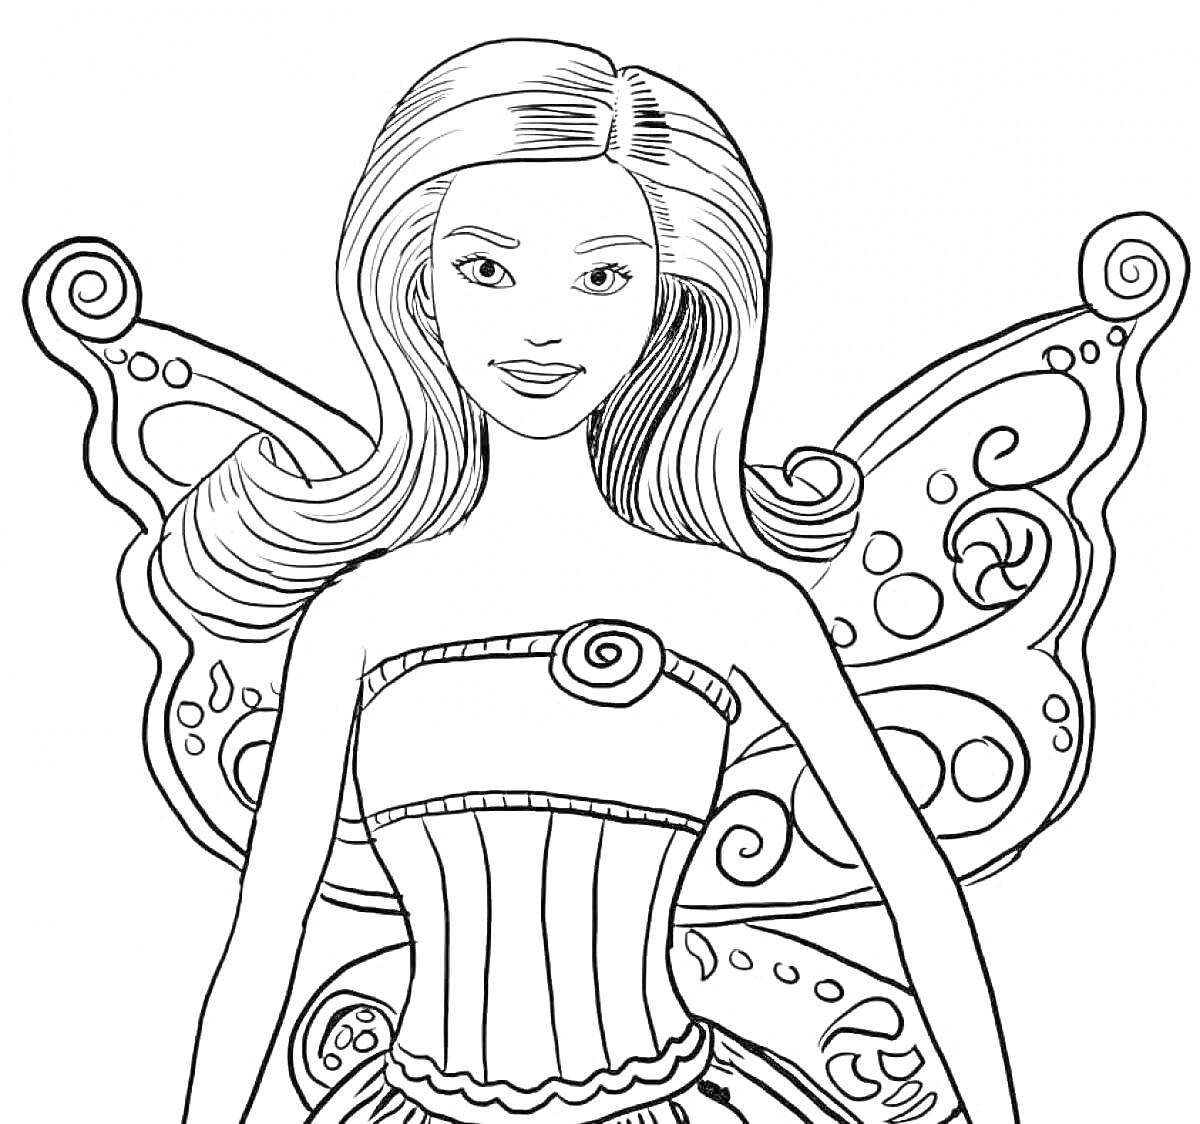 Раскраска Кукла Барби с длинными распущенными волосами в корсете и с большими крыльями бабочки